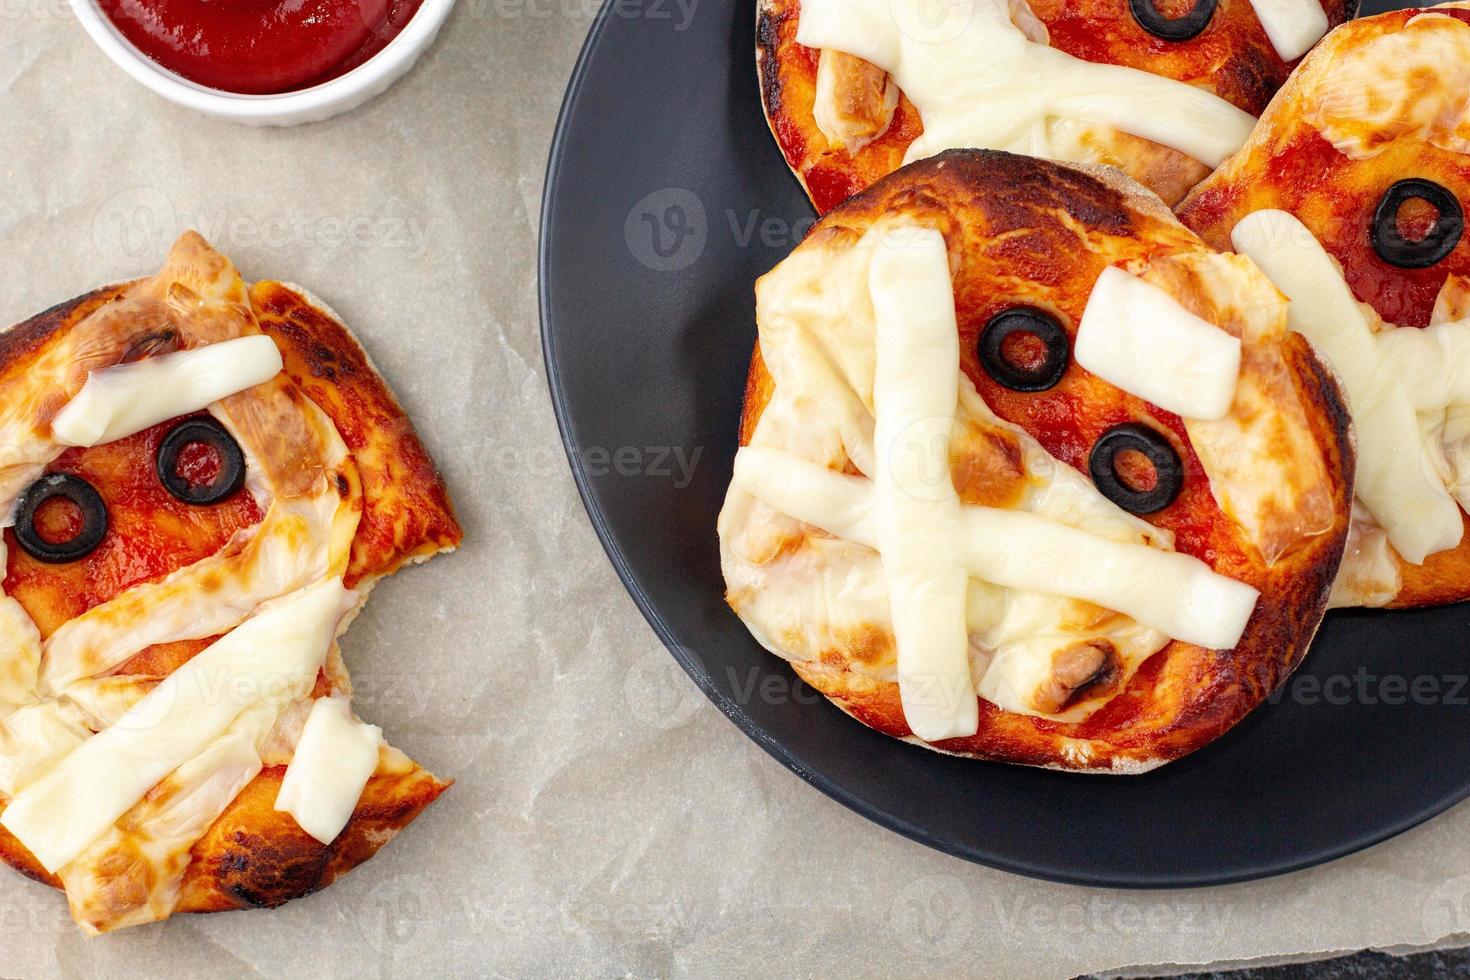 mini pizza como momia para niños con queso, aceitunas y ketchup. divertida comida loca de halloween para niños. foto